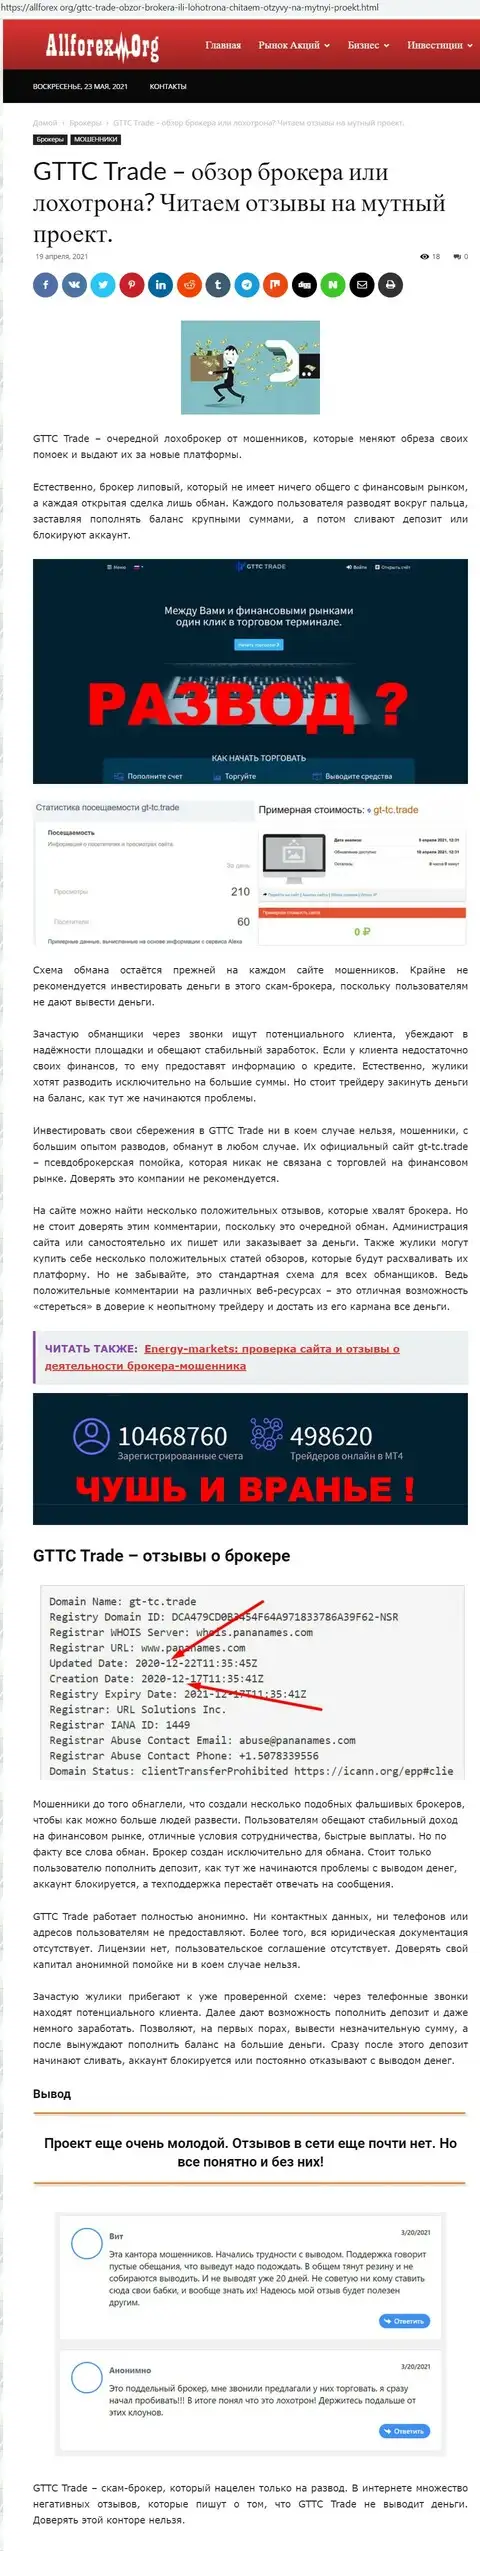 Обзор мошеннической компании ГТТС Трейд на сайте AllForex Org